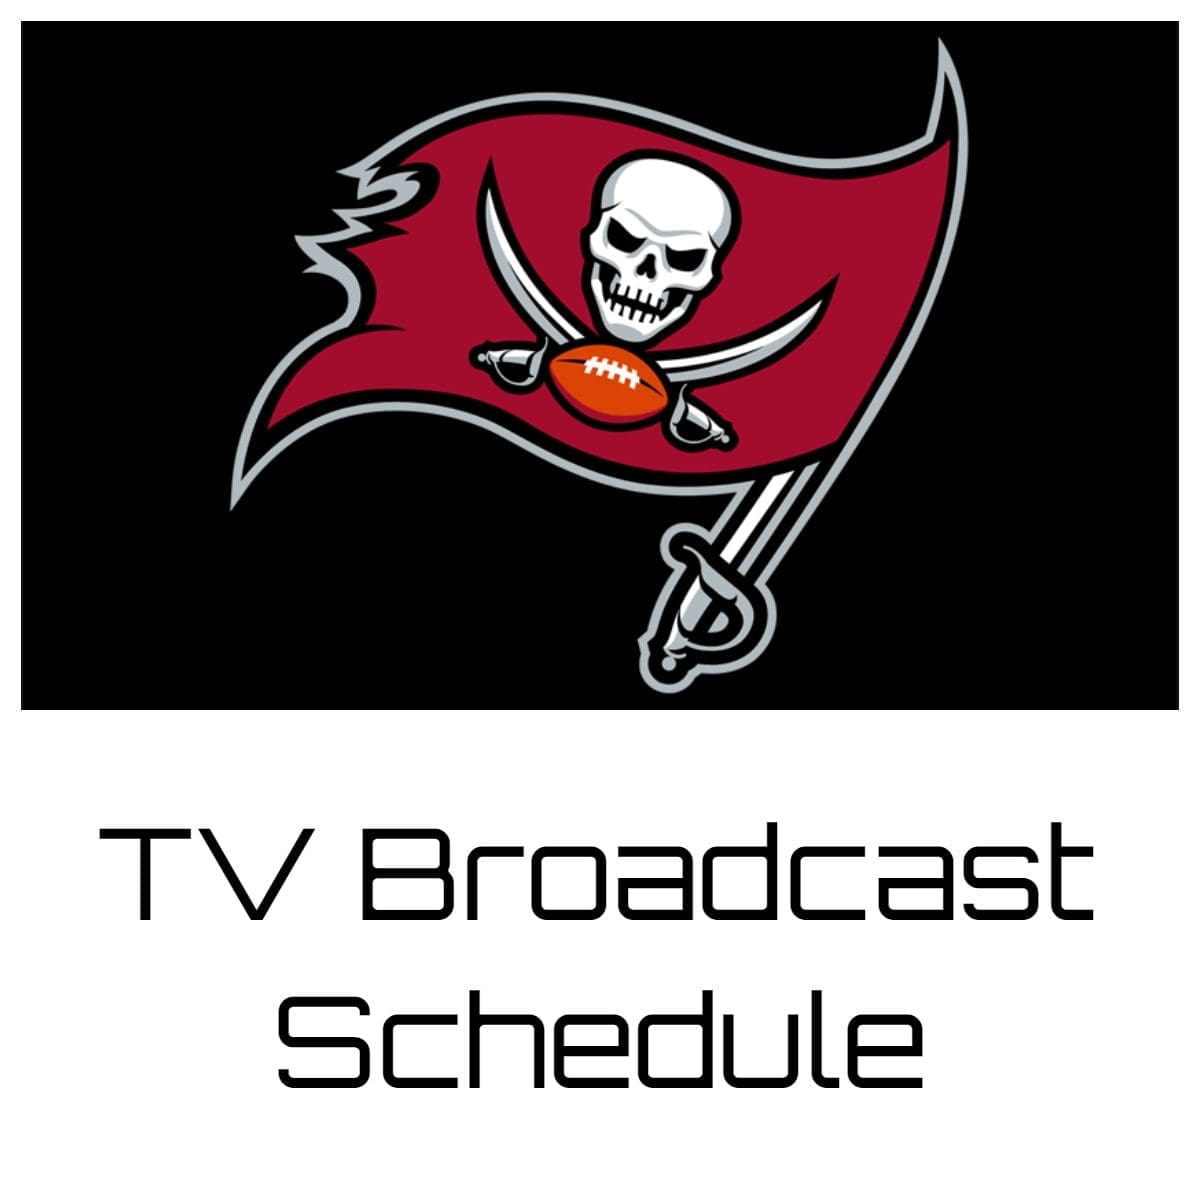 Tampa Bay Buccaneers TV Broadcast Schedule